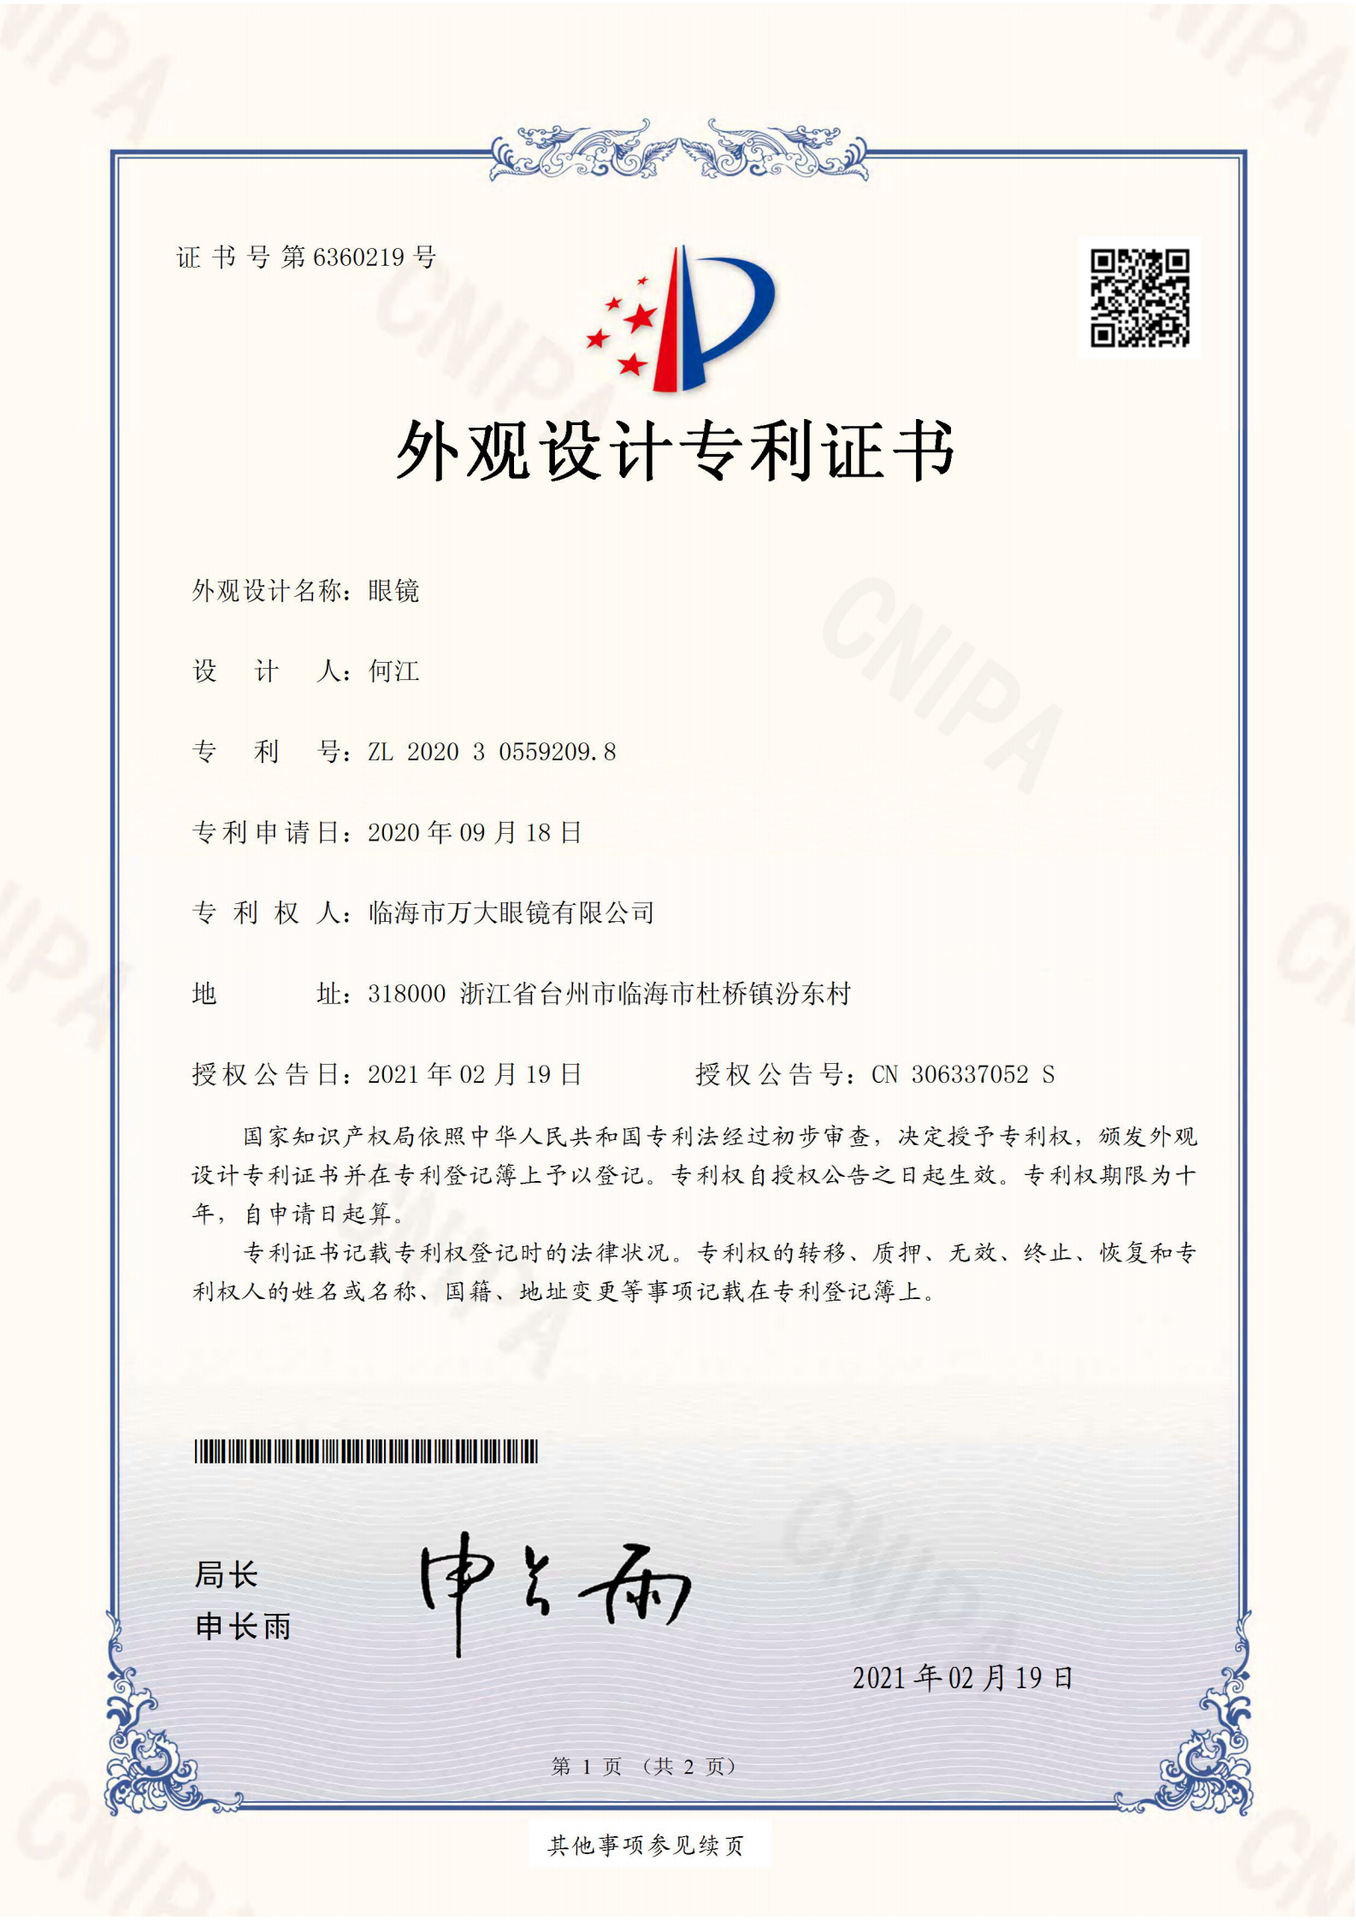 ZQ-BXS580D-2323 million glasses appearance certificate _00